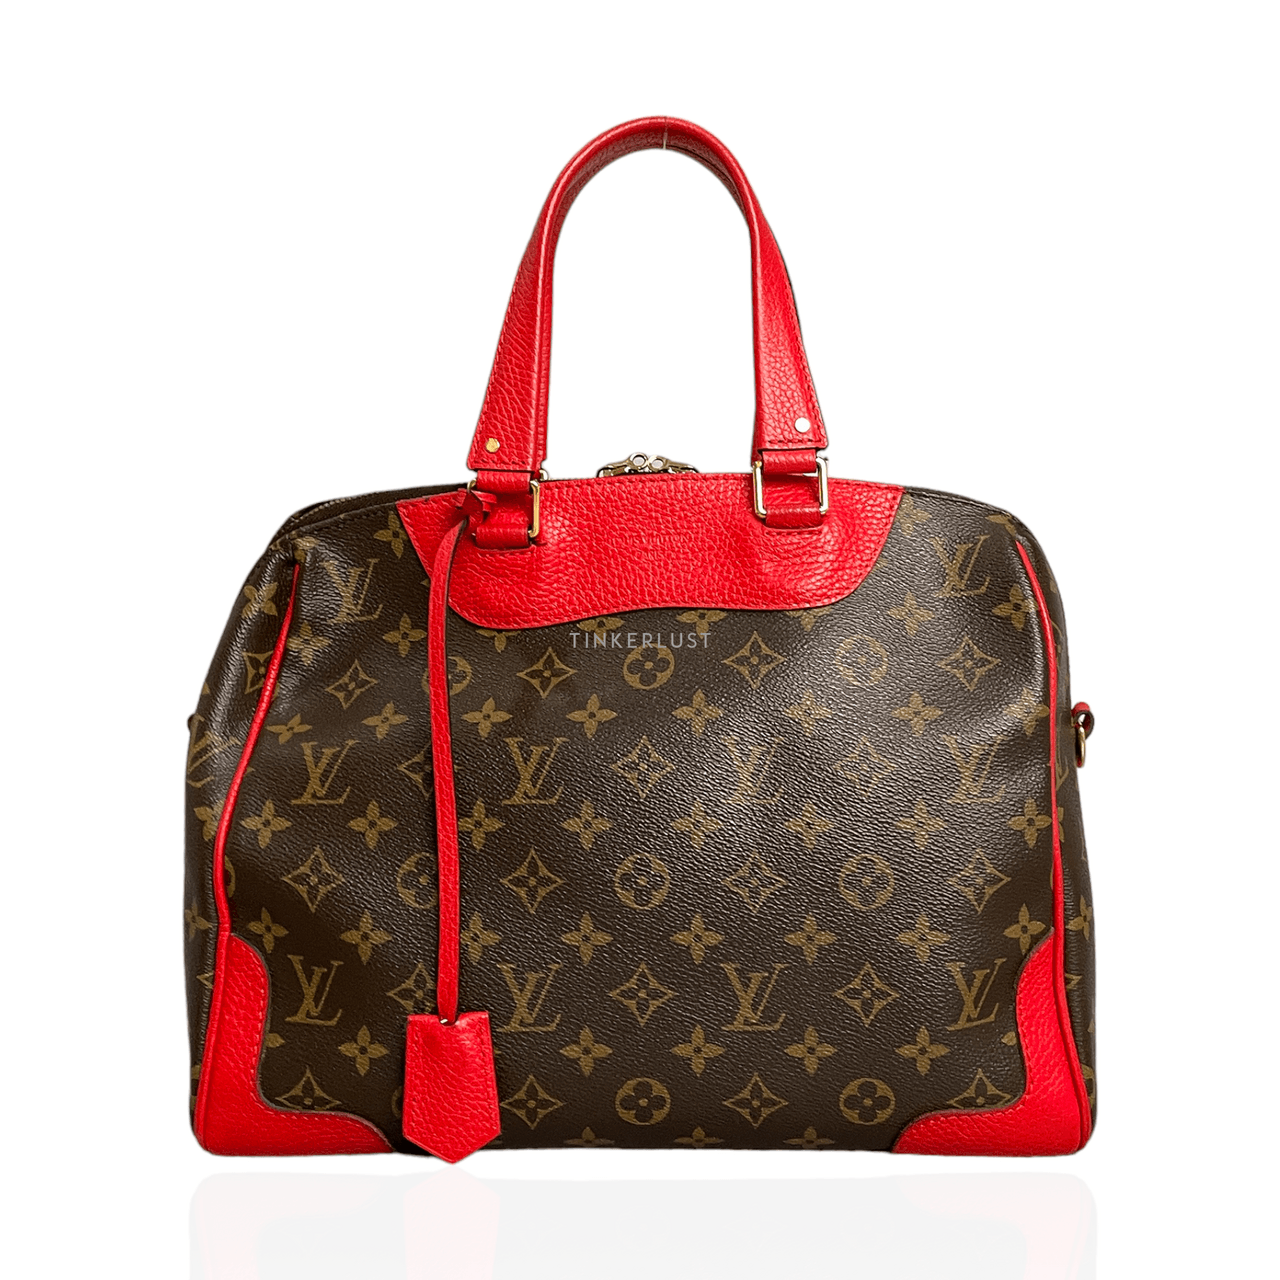 Louis Vuitton Retiro Cerise Red Monogram Canvas Handbag